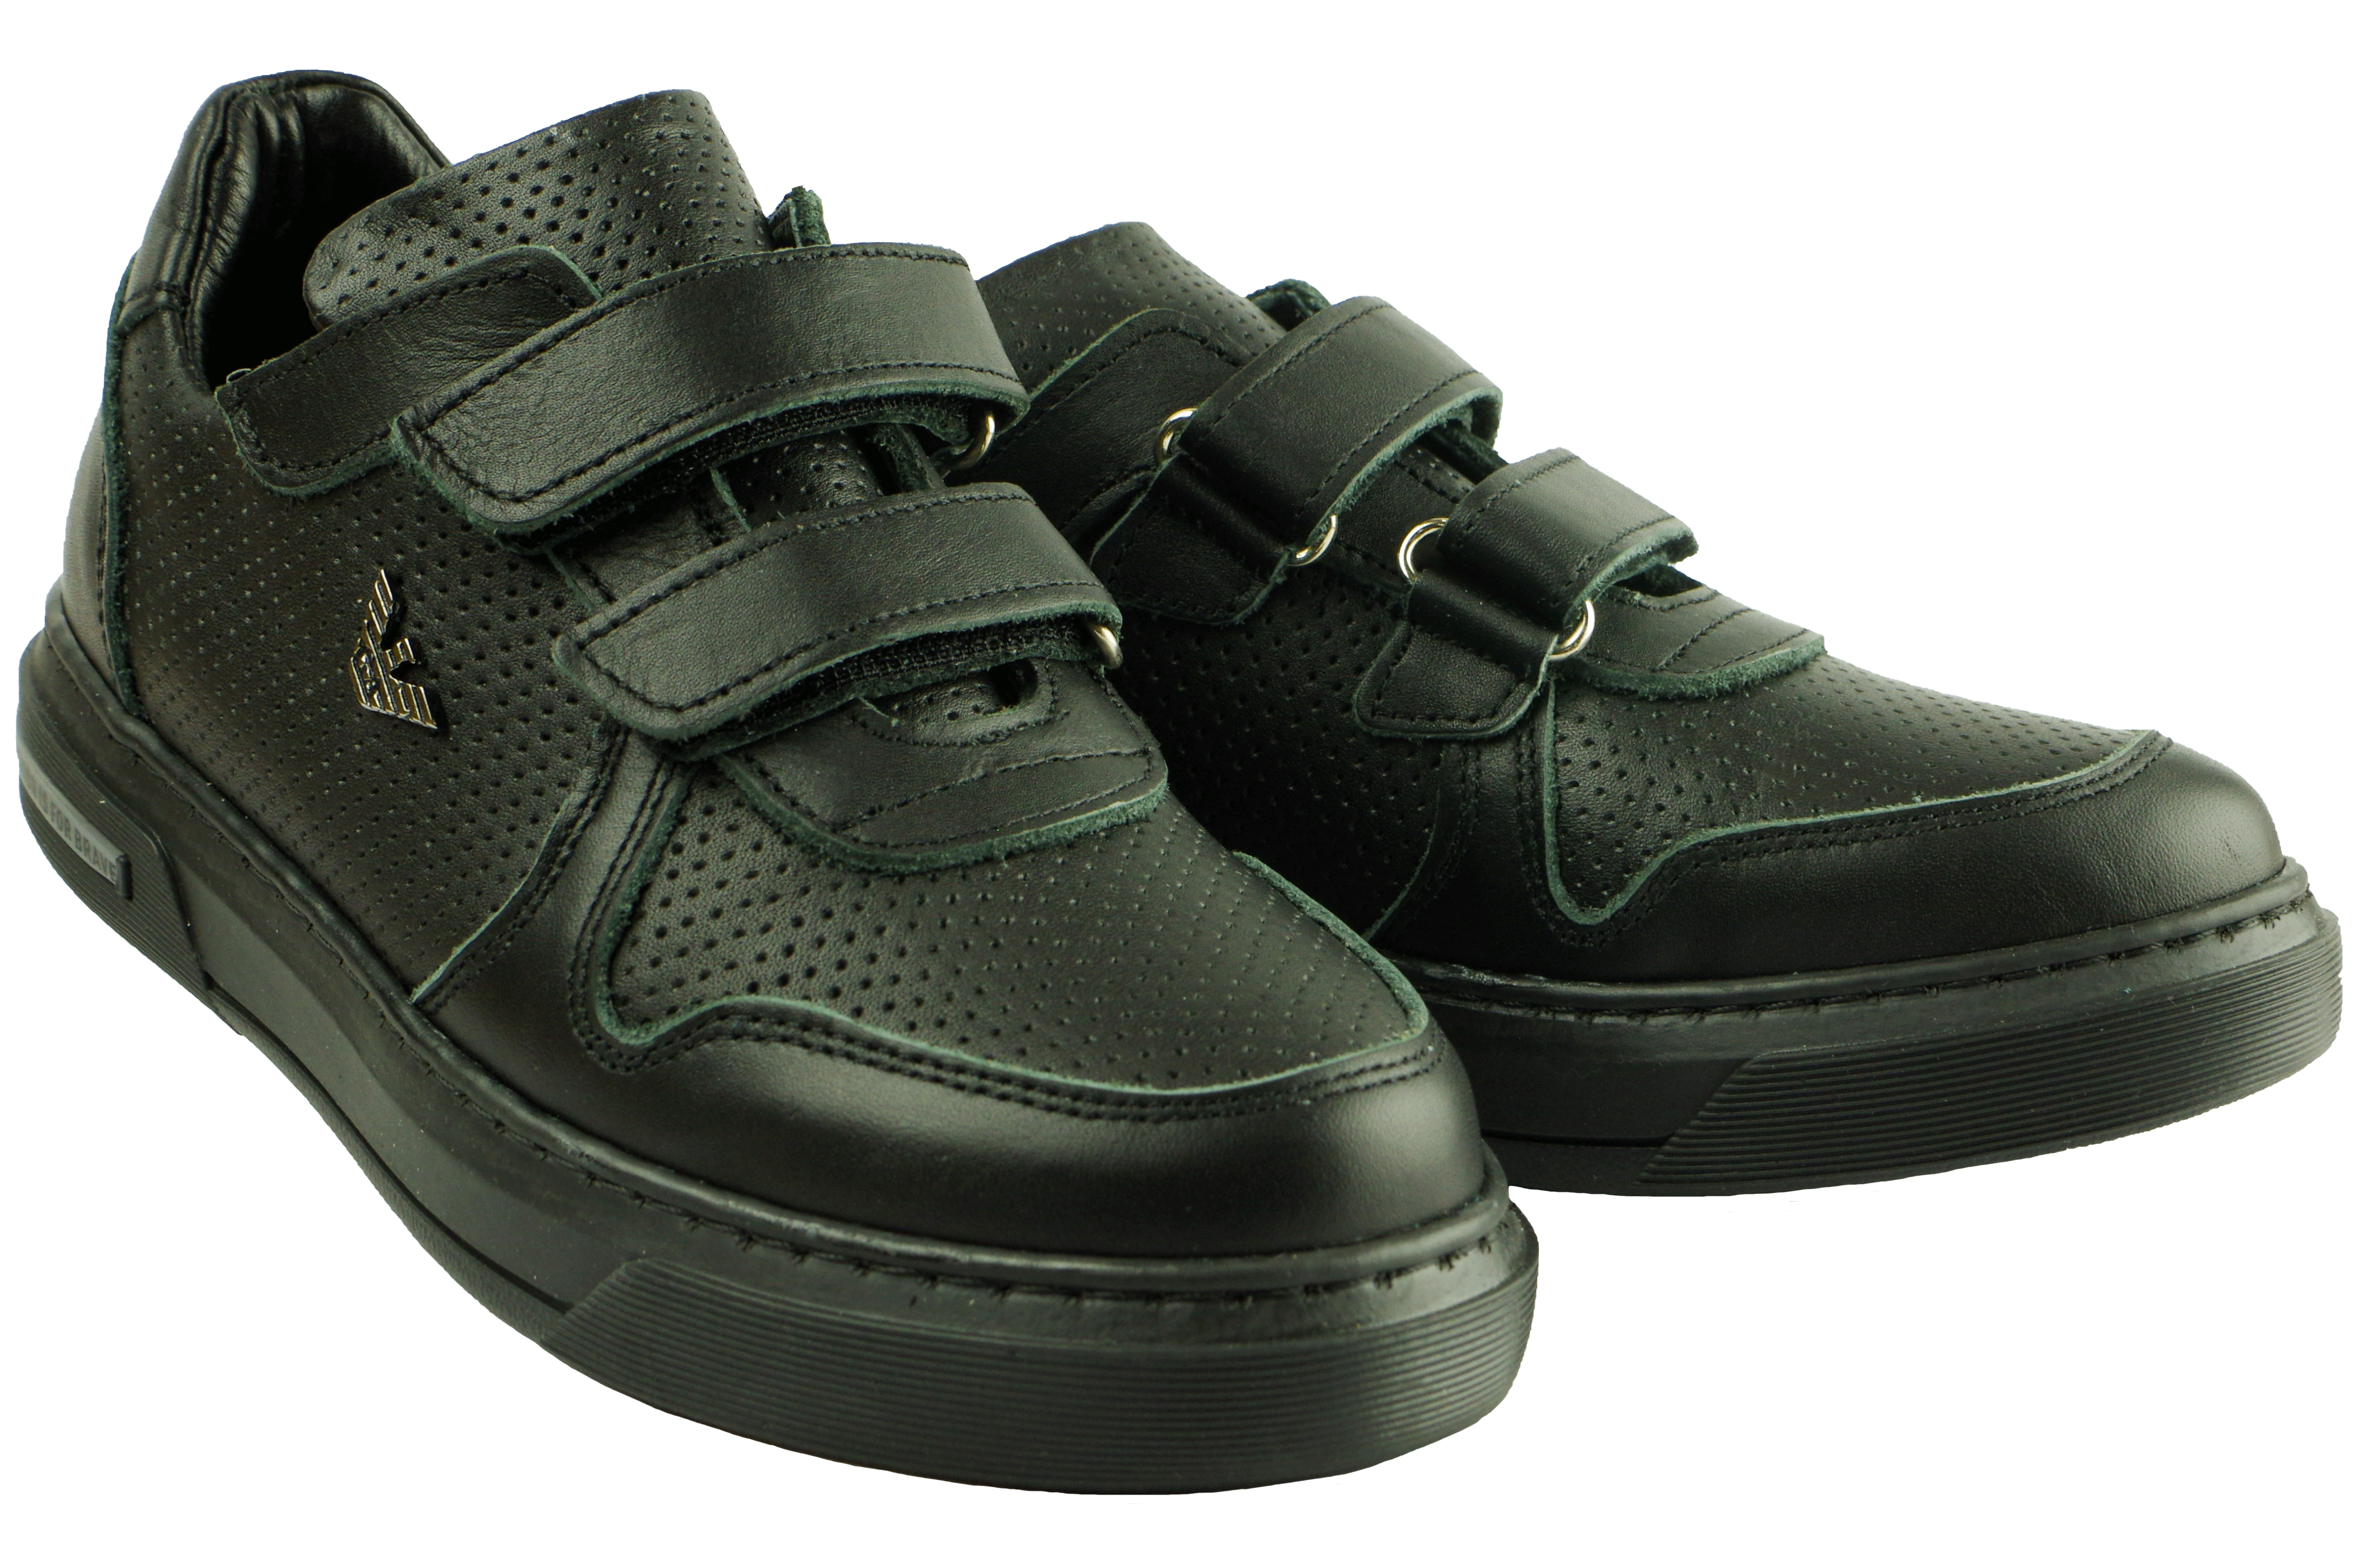 Туфлі дитячі (2119) для хлопчика, матеріал Натуральна шкіра, Чорний колір, 31-36 розміри – Sole Kids